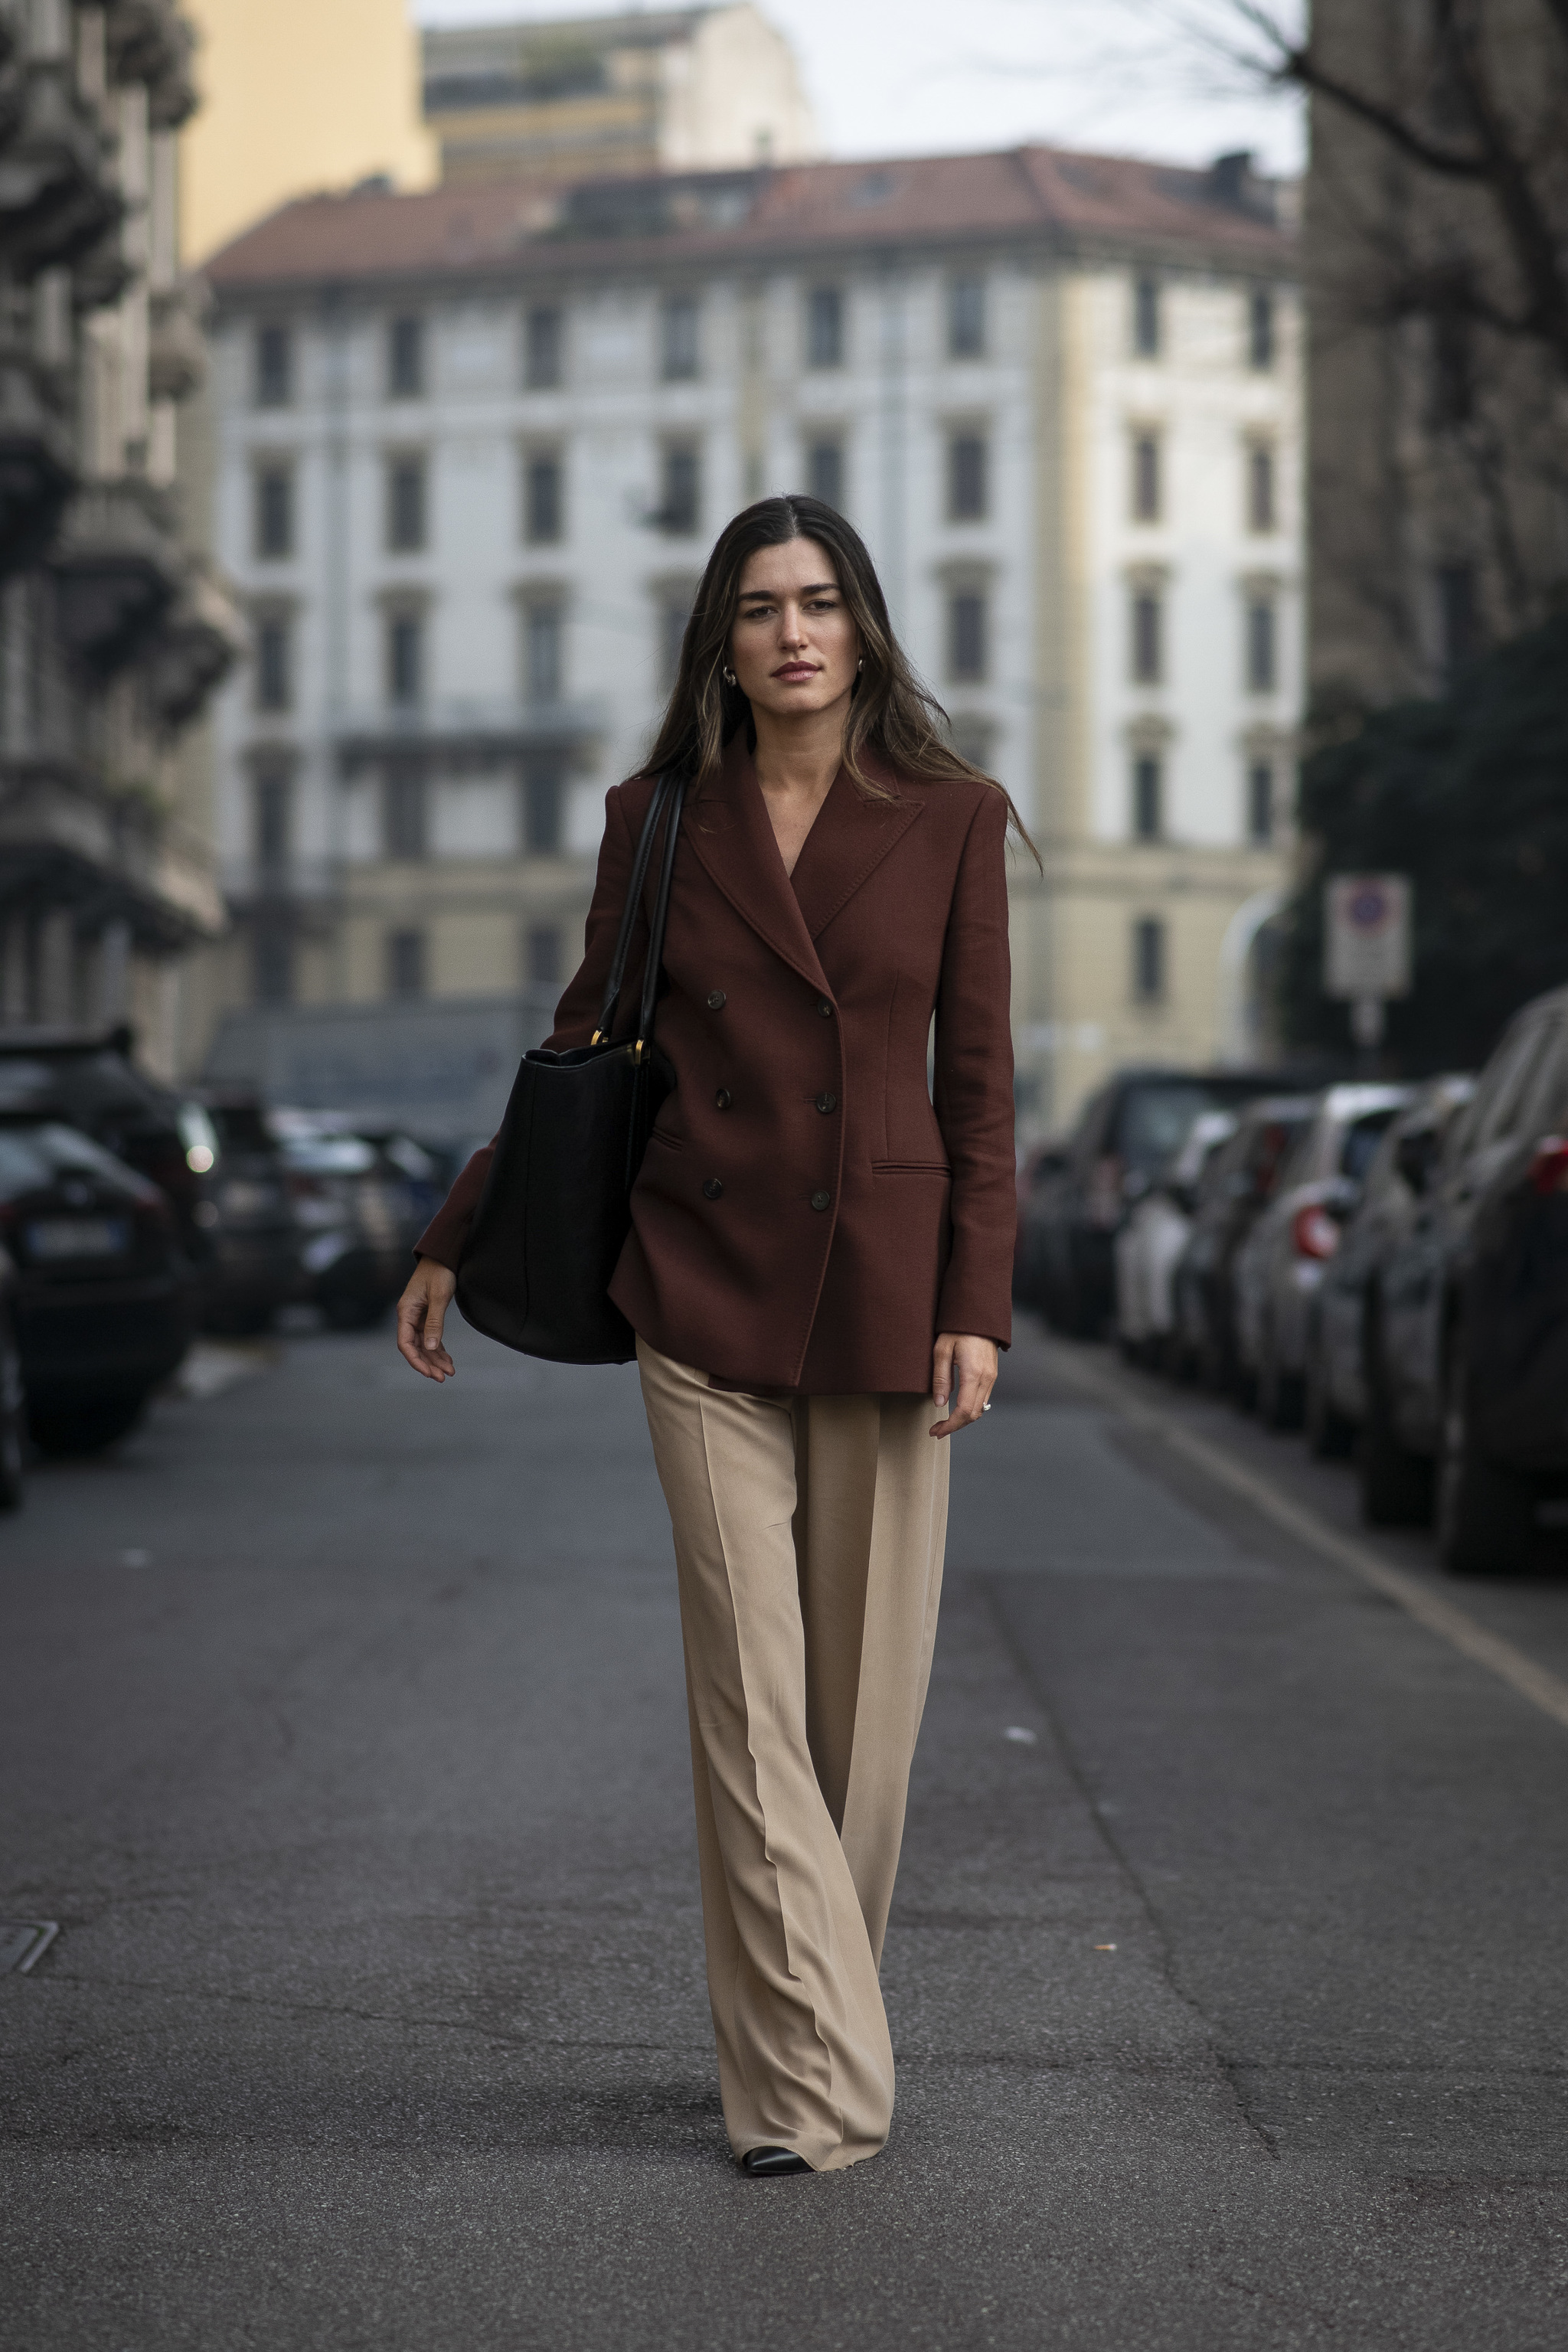 El look básico y elegante de Ilirida Krasniqi con blazer y pantalón de vestir.